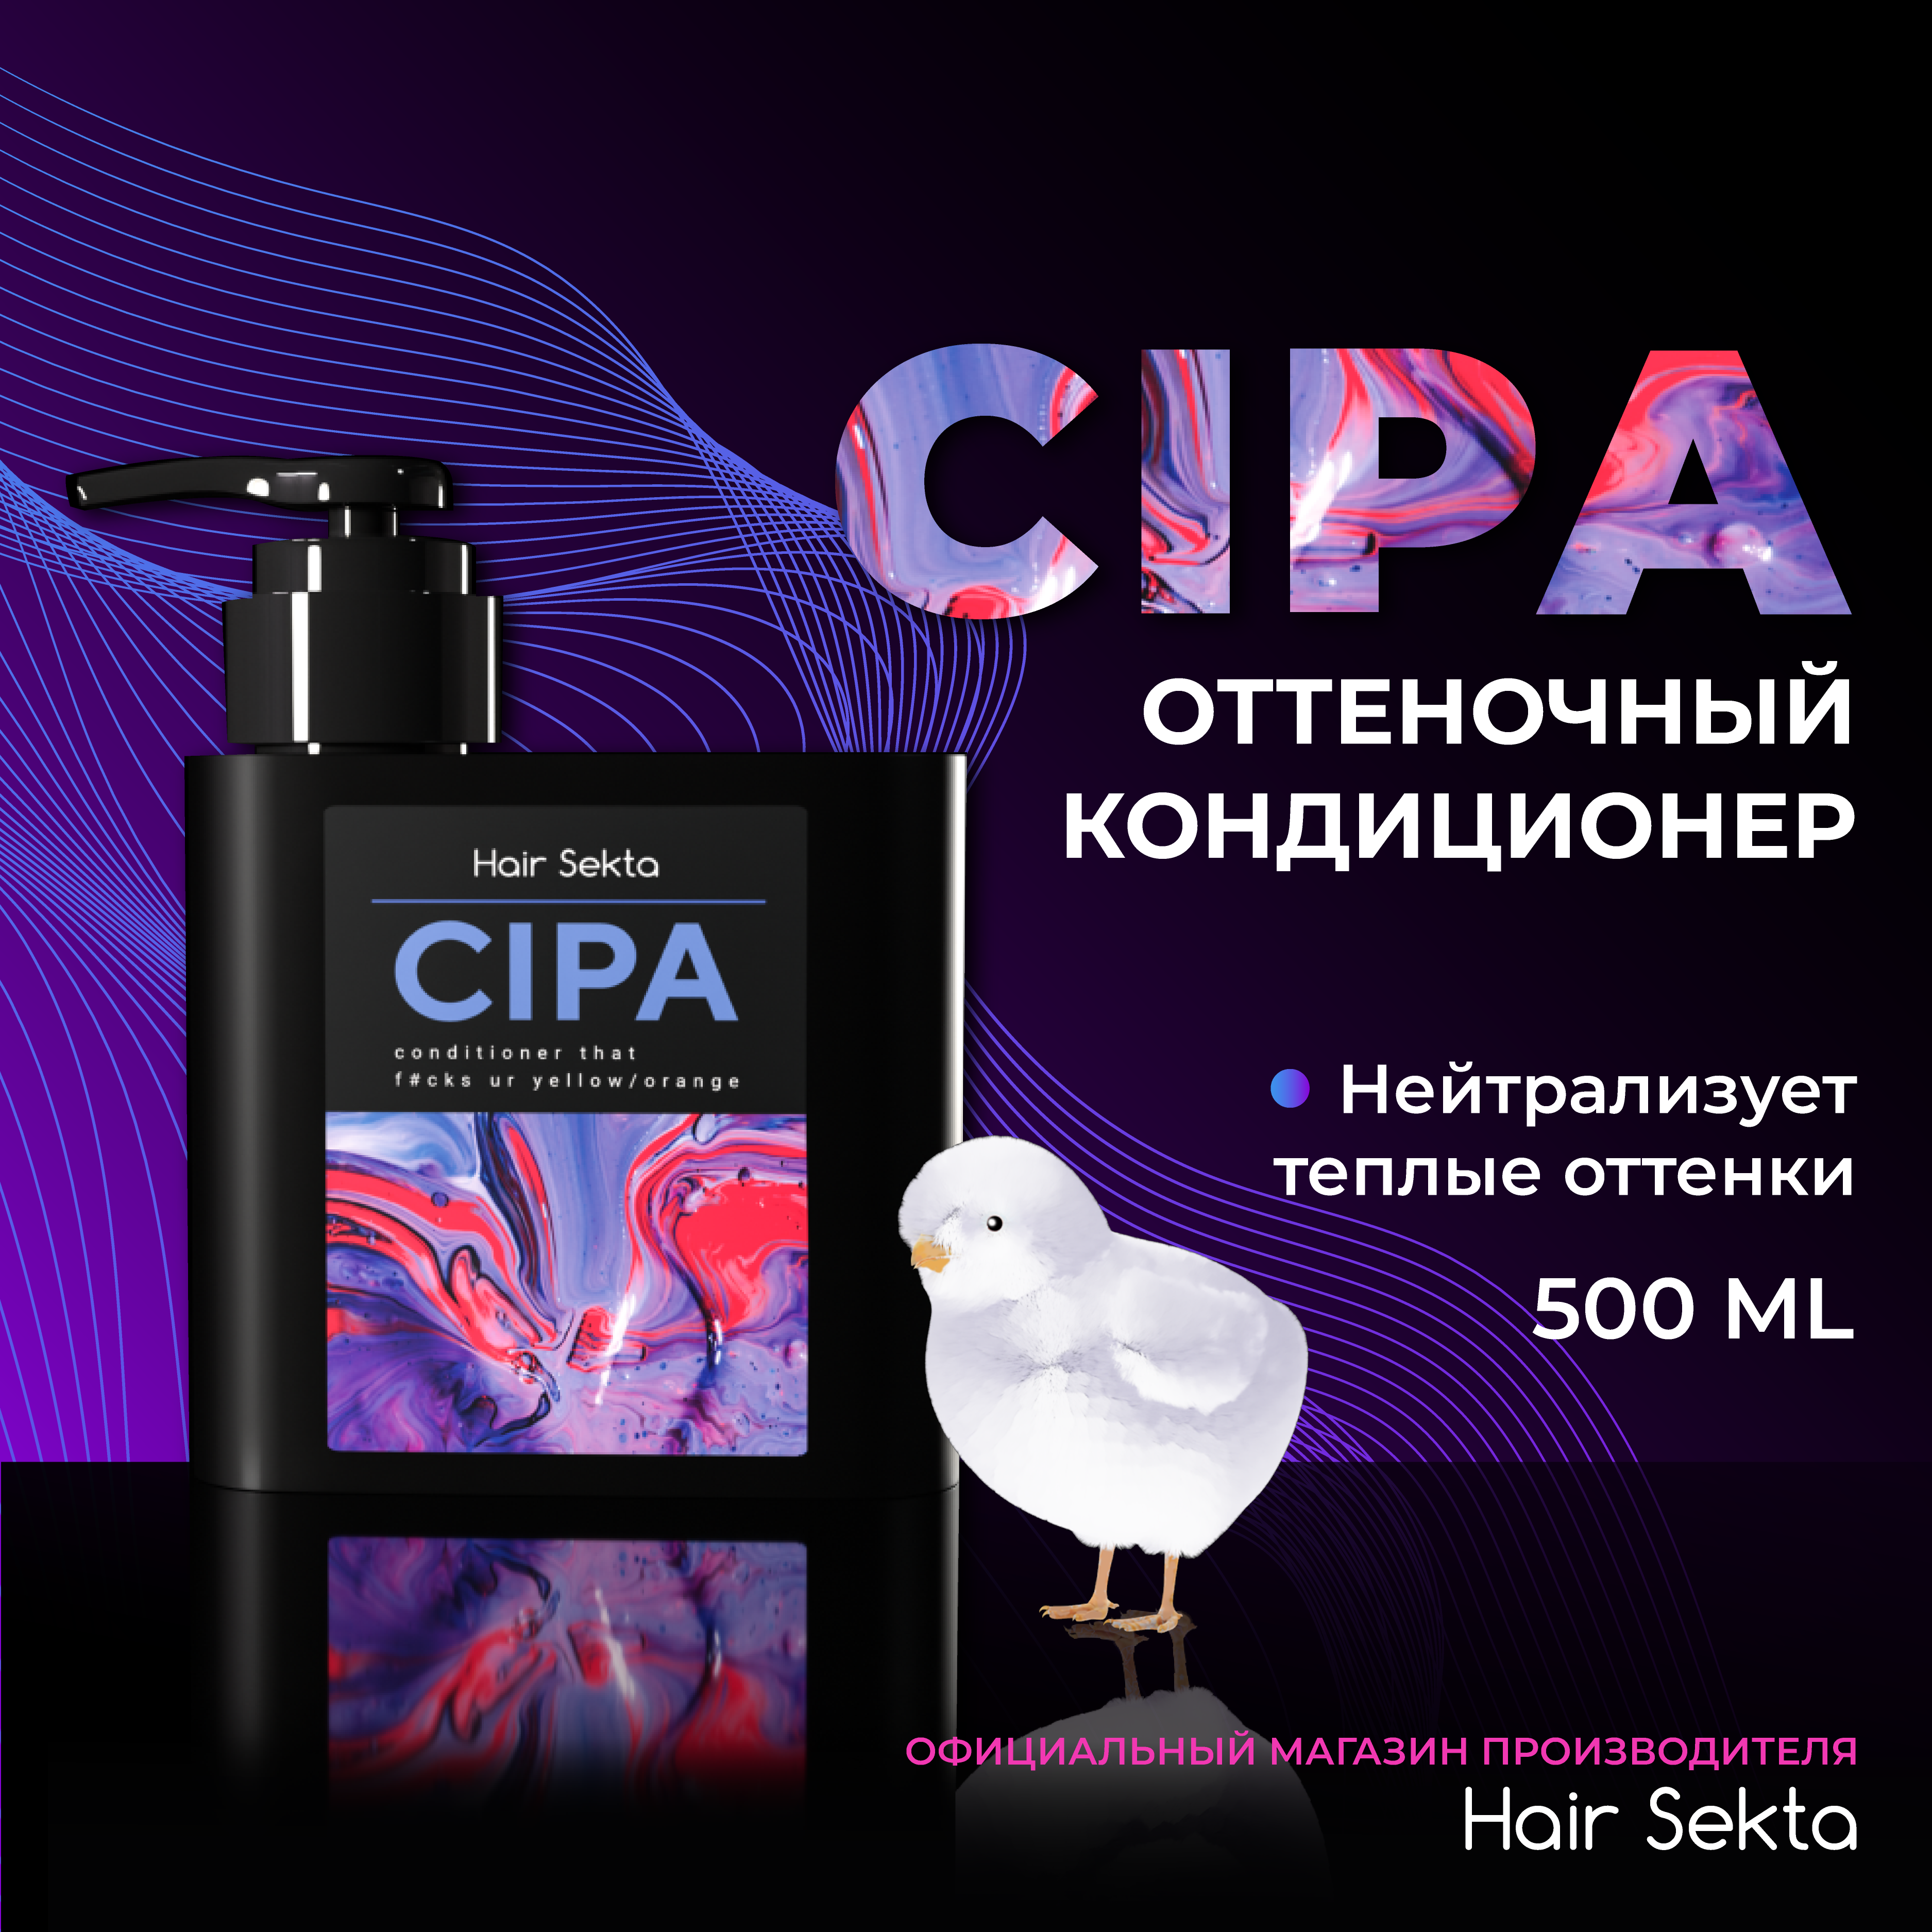 Кондиционер для волос Hair Sekta Cipa оттеночный, 500 мл